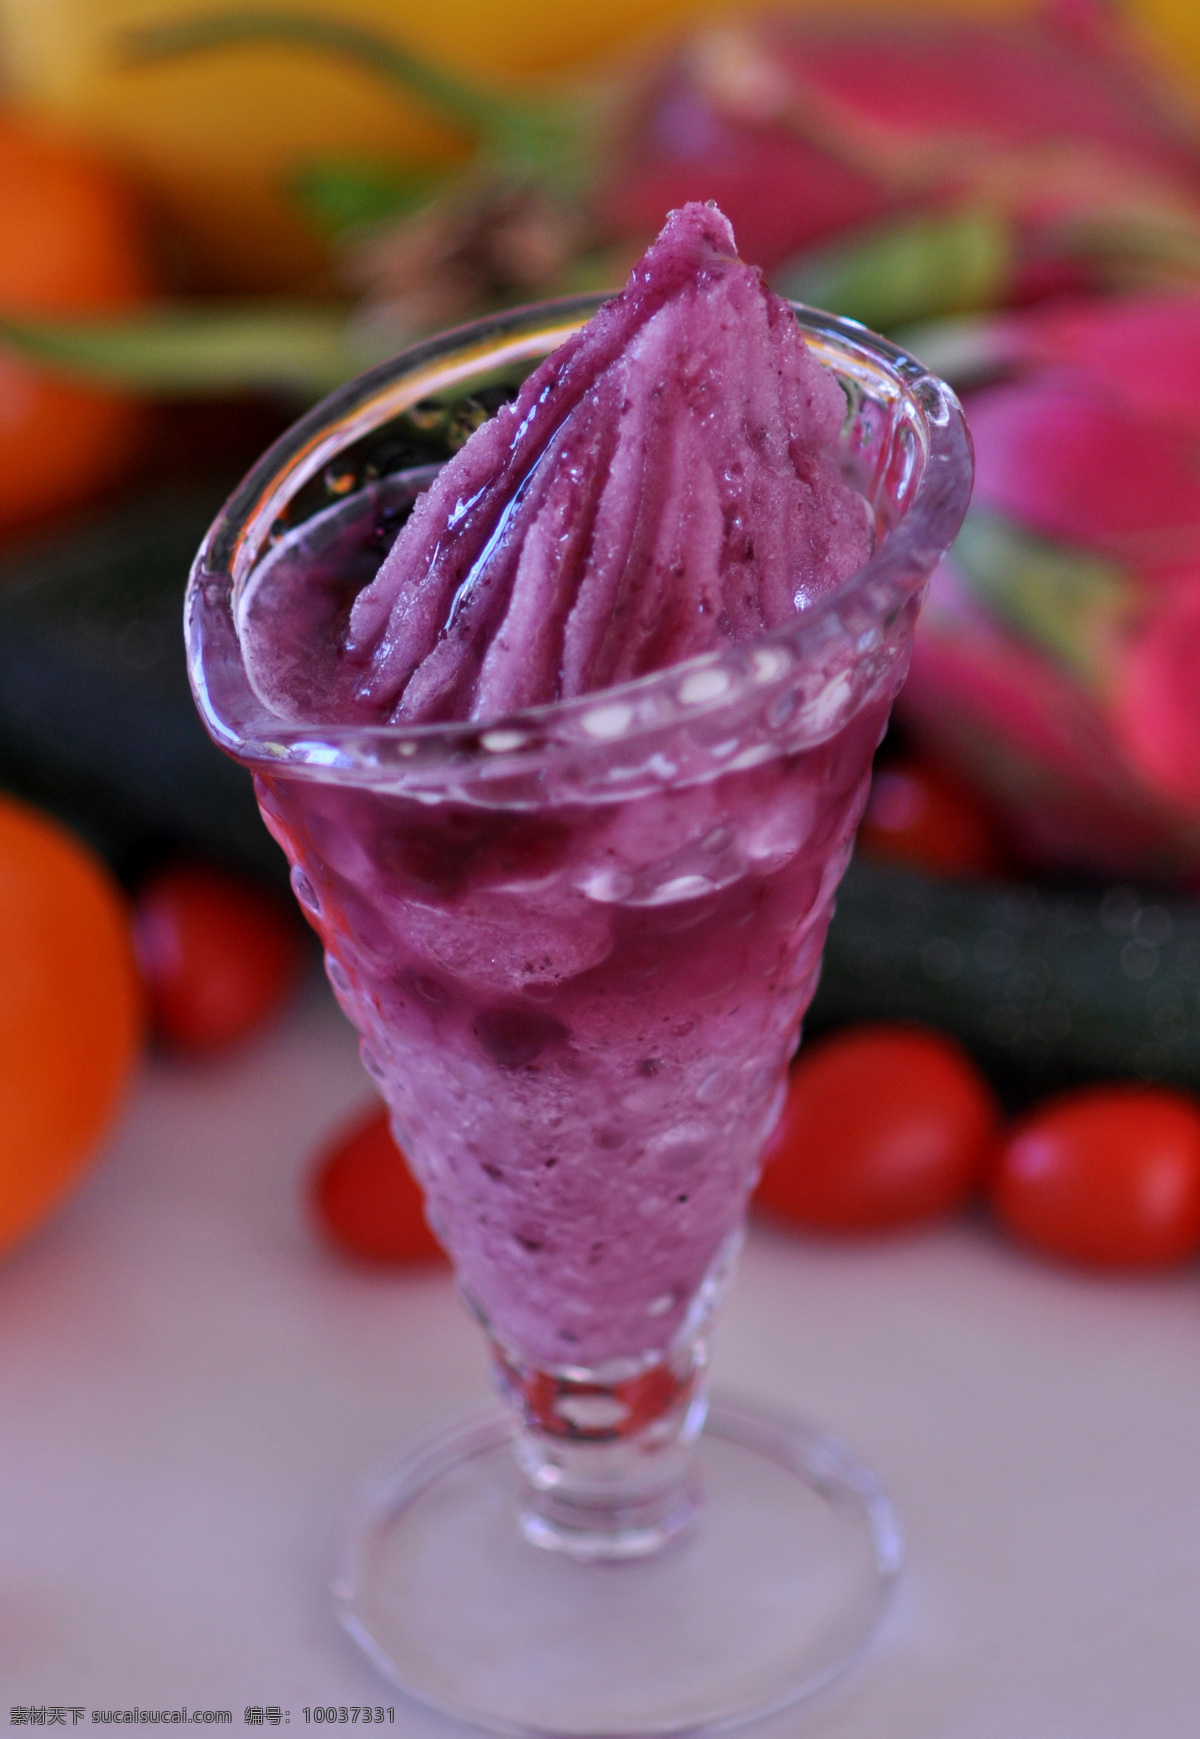 蓝莓冰沙 冰品 蓝莓味 冰沙 饮料酒水 餐饮美食